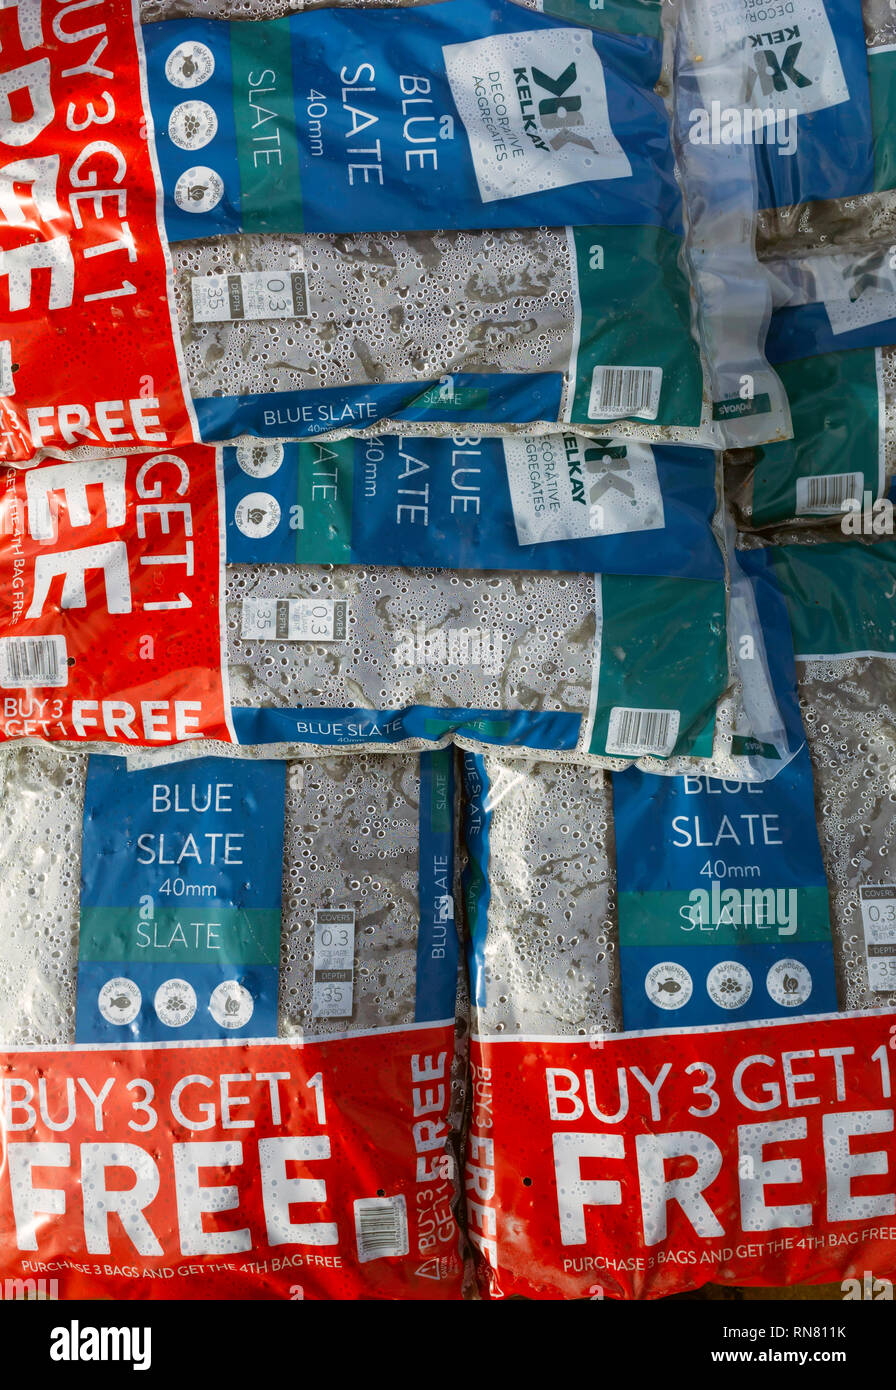 Visualización de bolsas de azul pizarra molida para jardín use Buy 3 get 1 Free oferta en un centro de jardinería Foto de stock